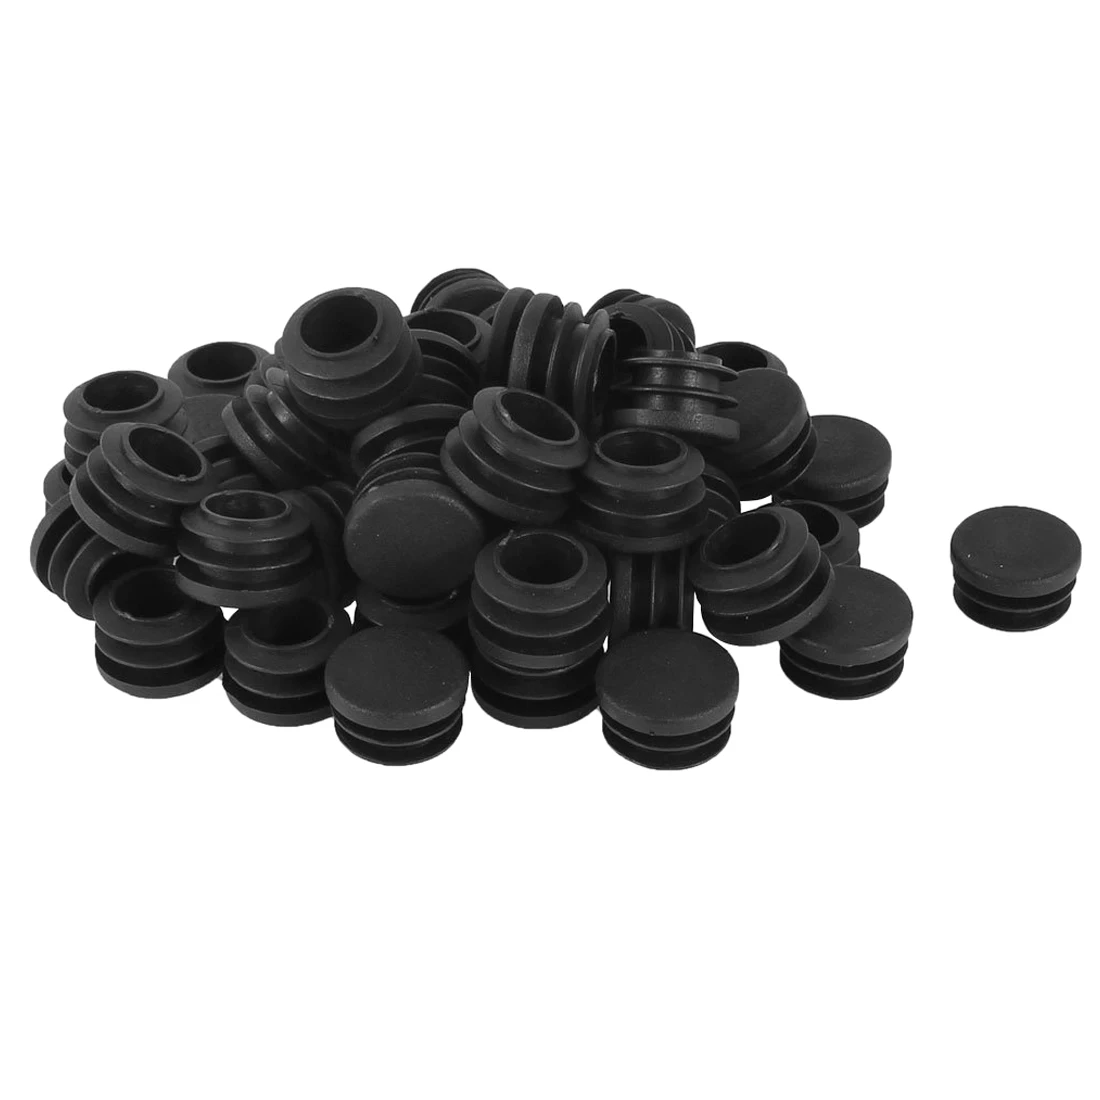 Оптовая продажа 50 шт Черный пластиковые ножки для мебели Plug защитные Заглушки вставные заглушки Bung для круглых трубы диаметром 22 мм